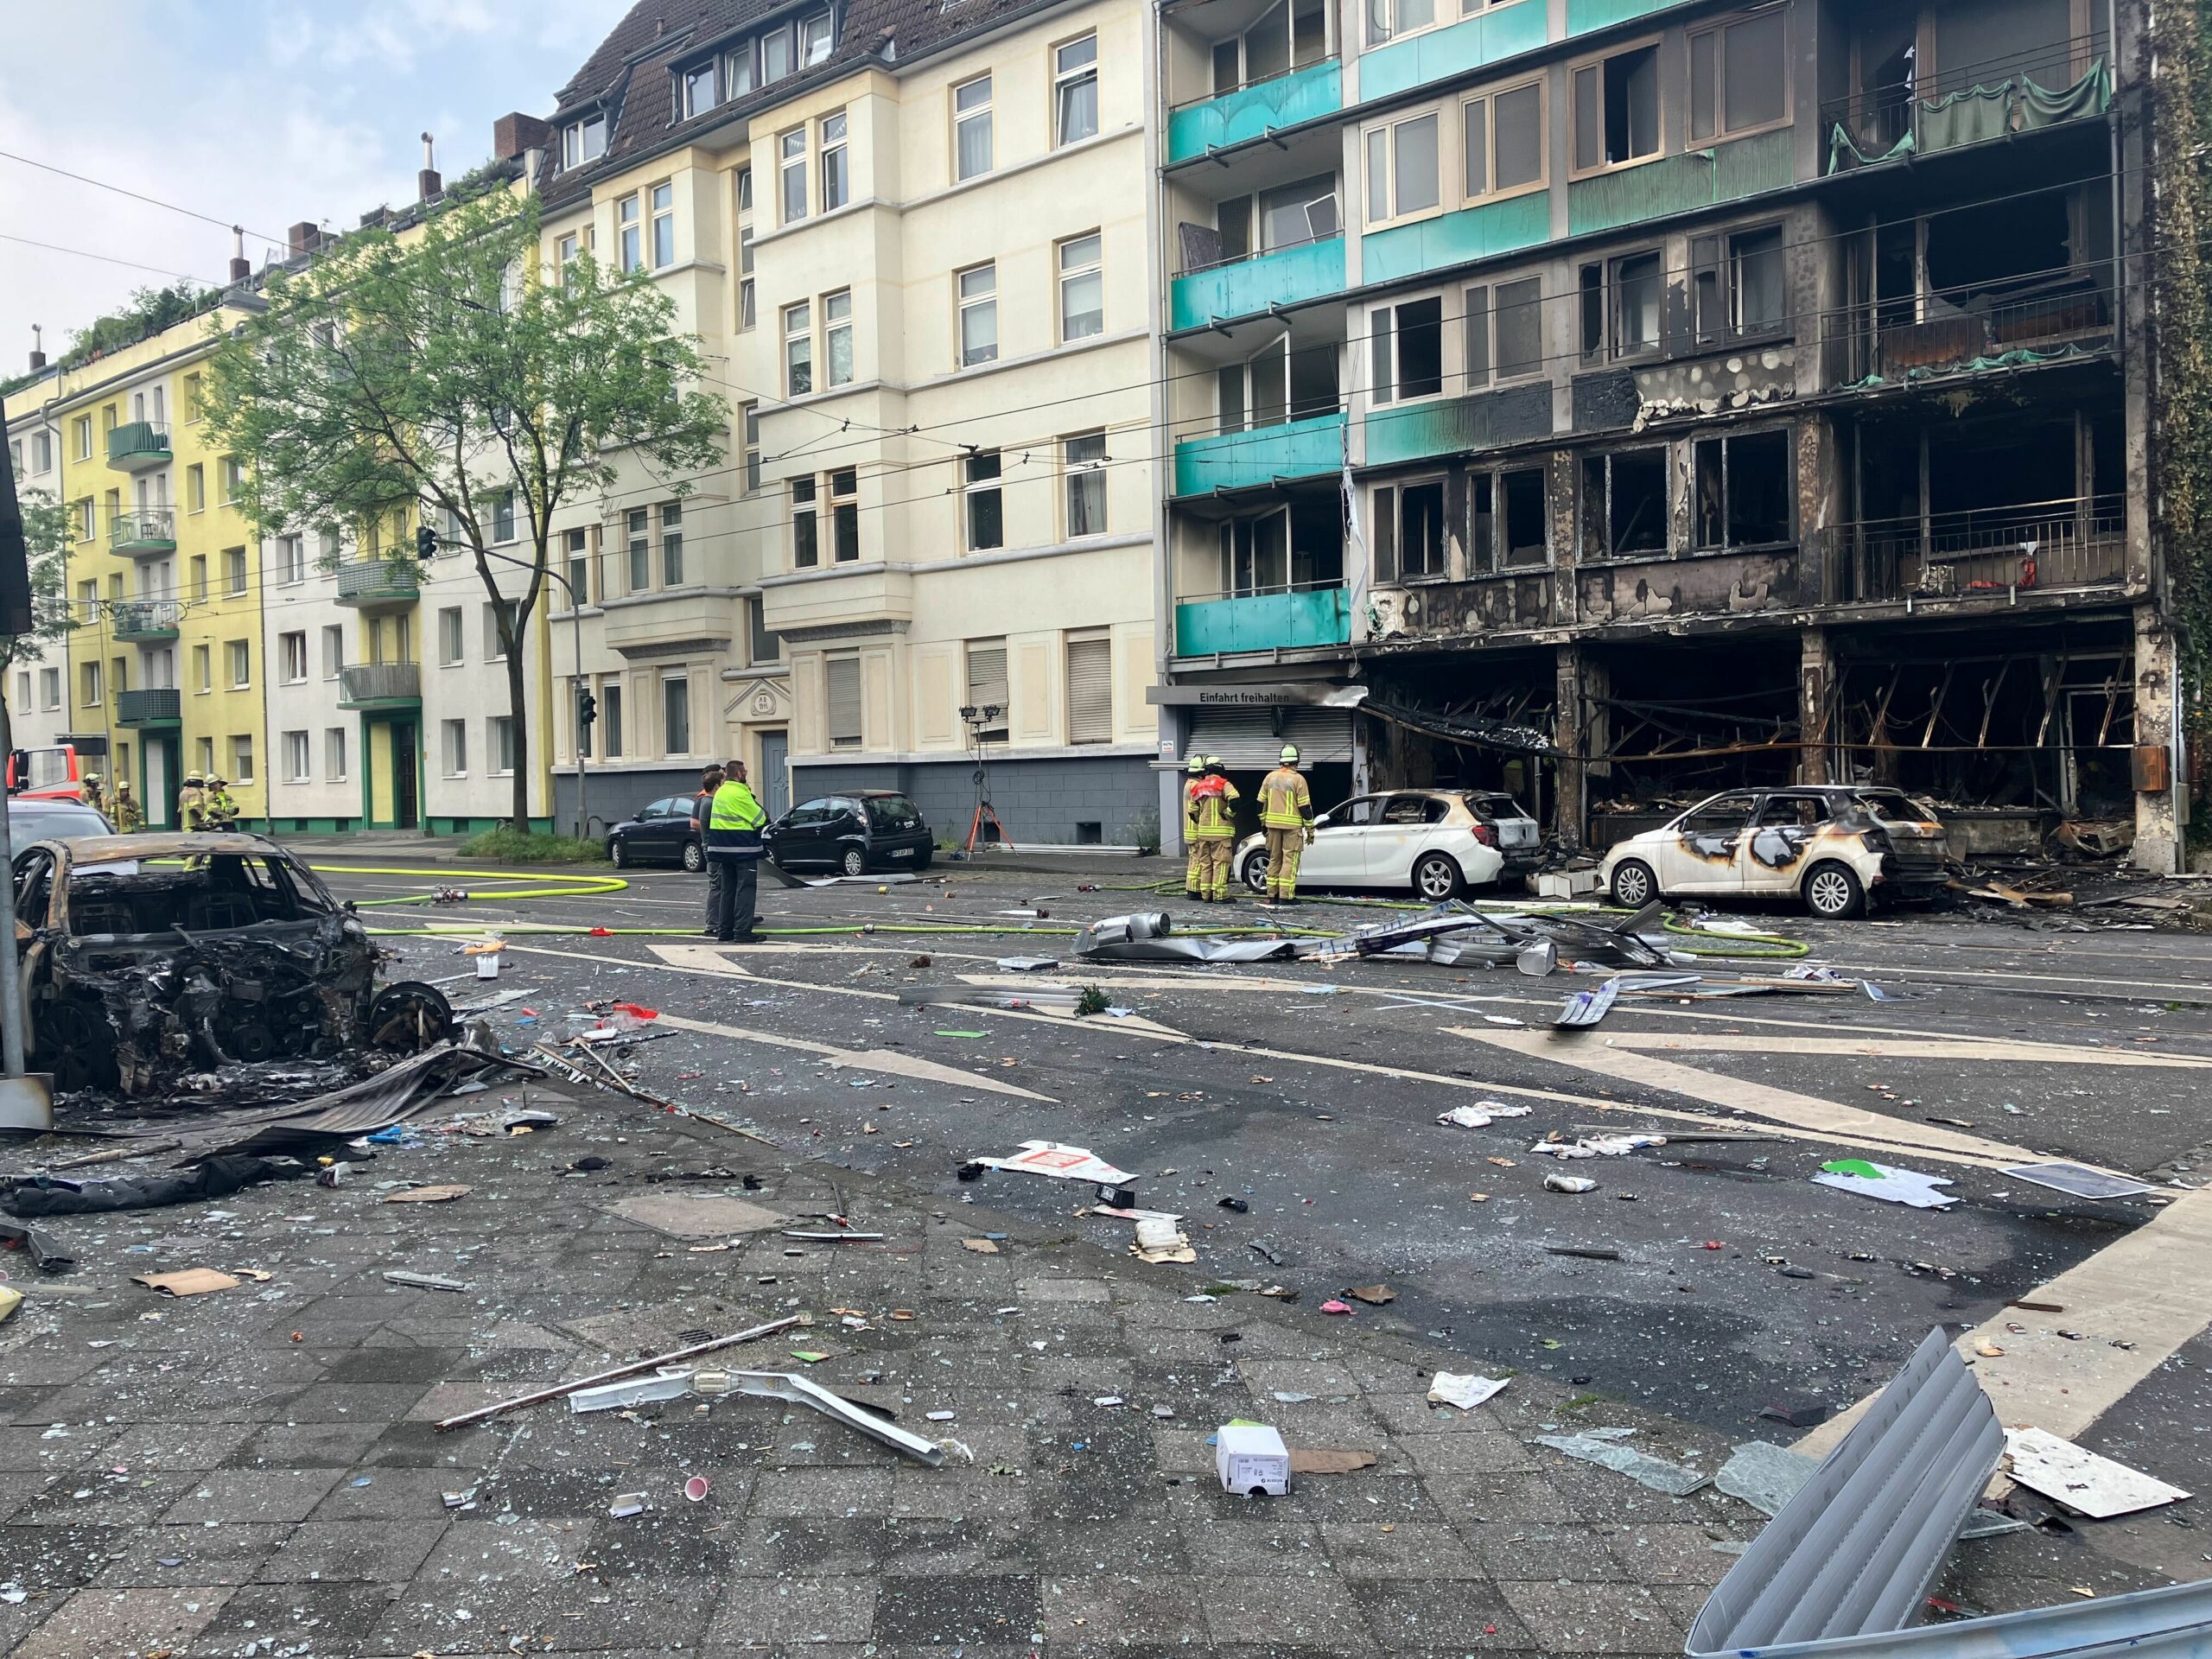 Auf der ganzen Straße liegen Trümmer, selbst gegenüber des Hauses ist ein Auto ausgebrannt: Mindestens drei Menschen starben bei dem verheerenden Feuer in Düsseldorf.